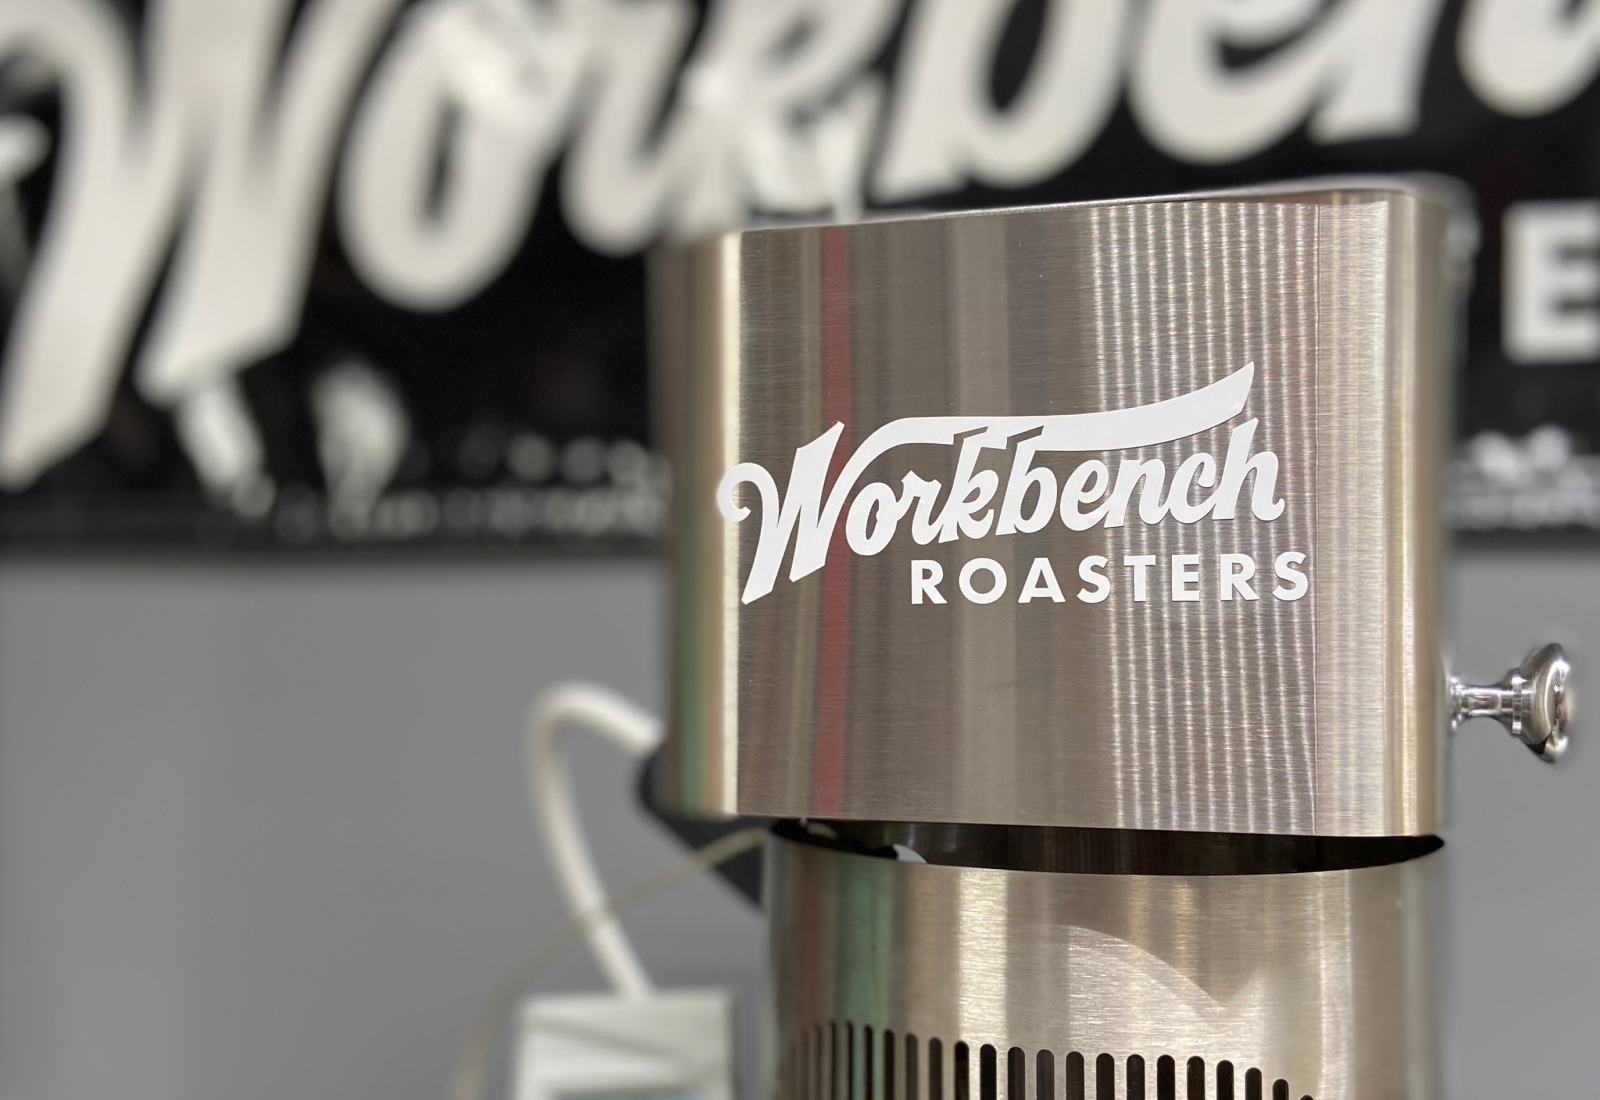 Branded Coffee Roaster | Workbench Roasters